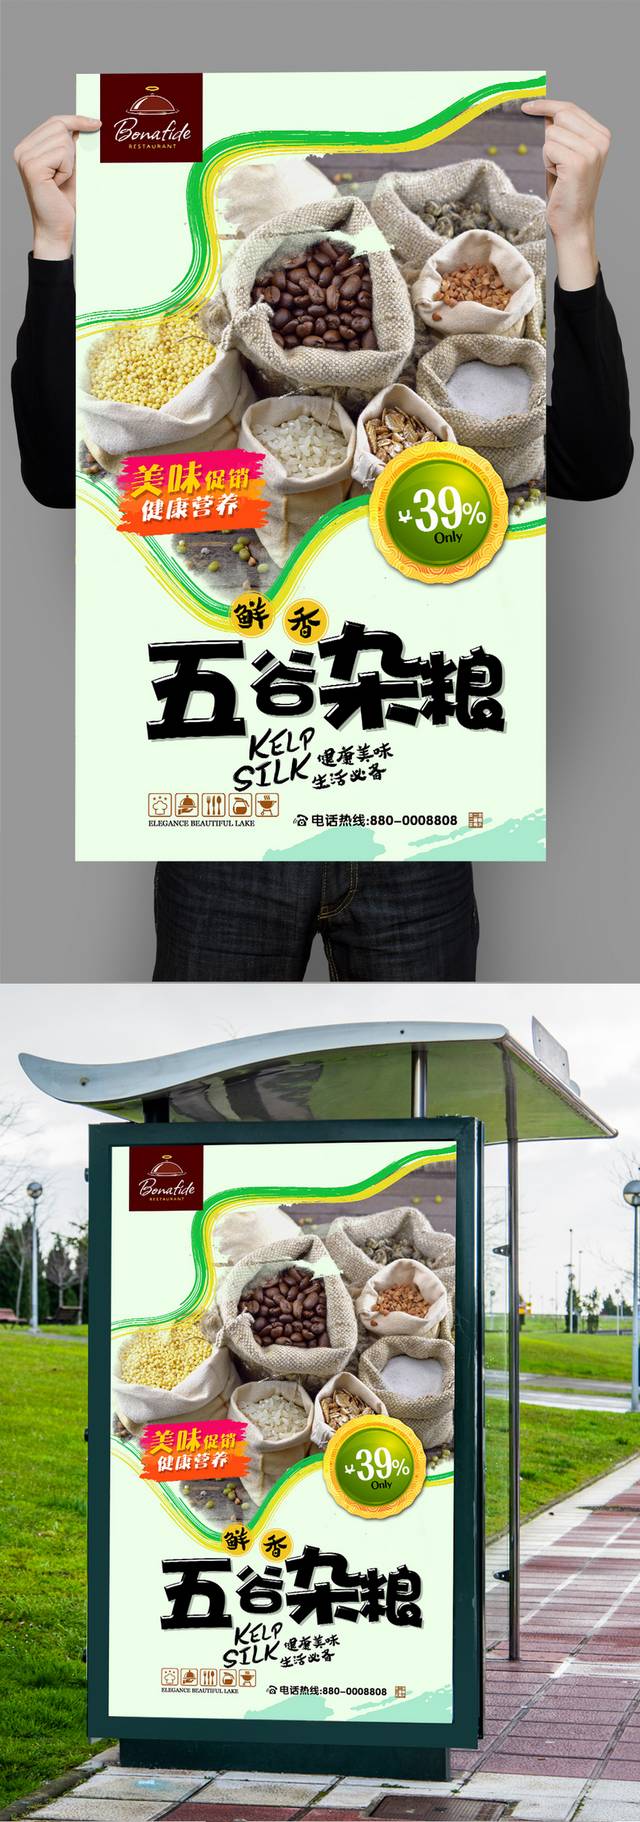 清新五谷杂粮海报宣传设计